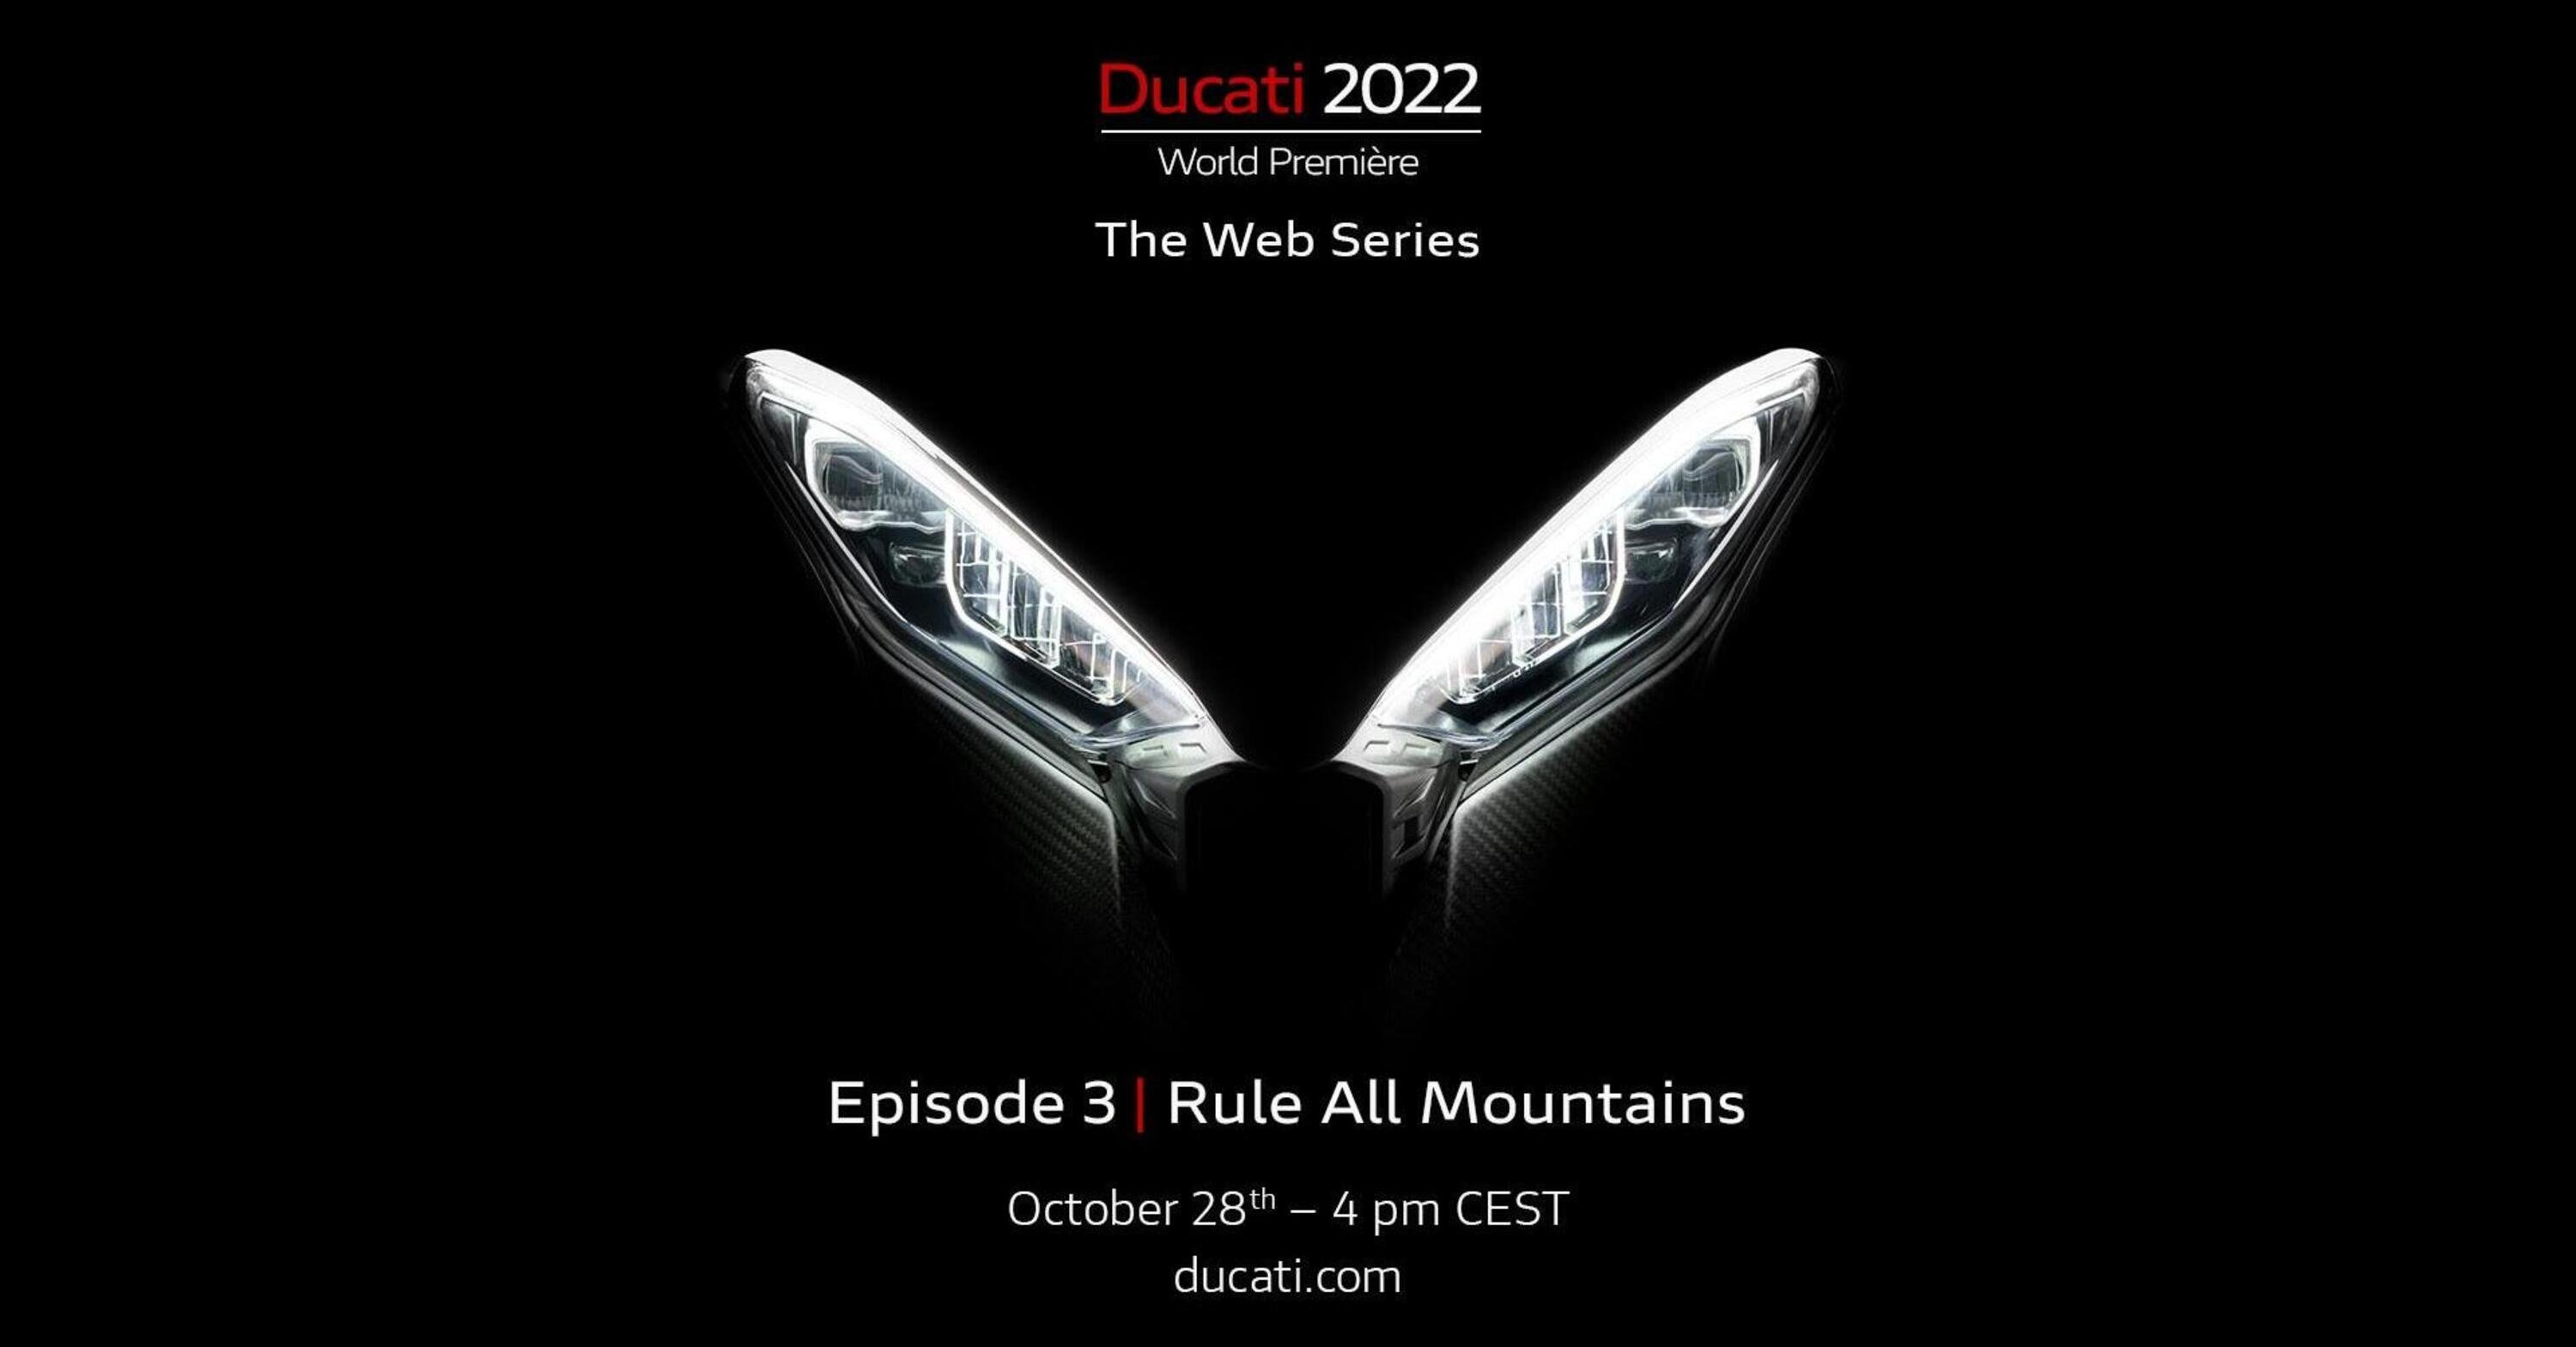 Ducati World Premiere. Appuntamento con la terza novit&agrave; 2022: Multistrada Pikes Peak V4?